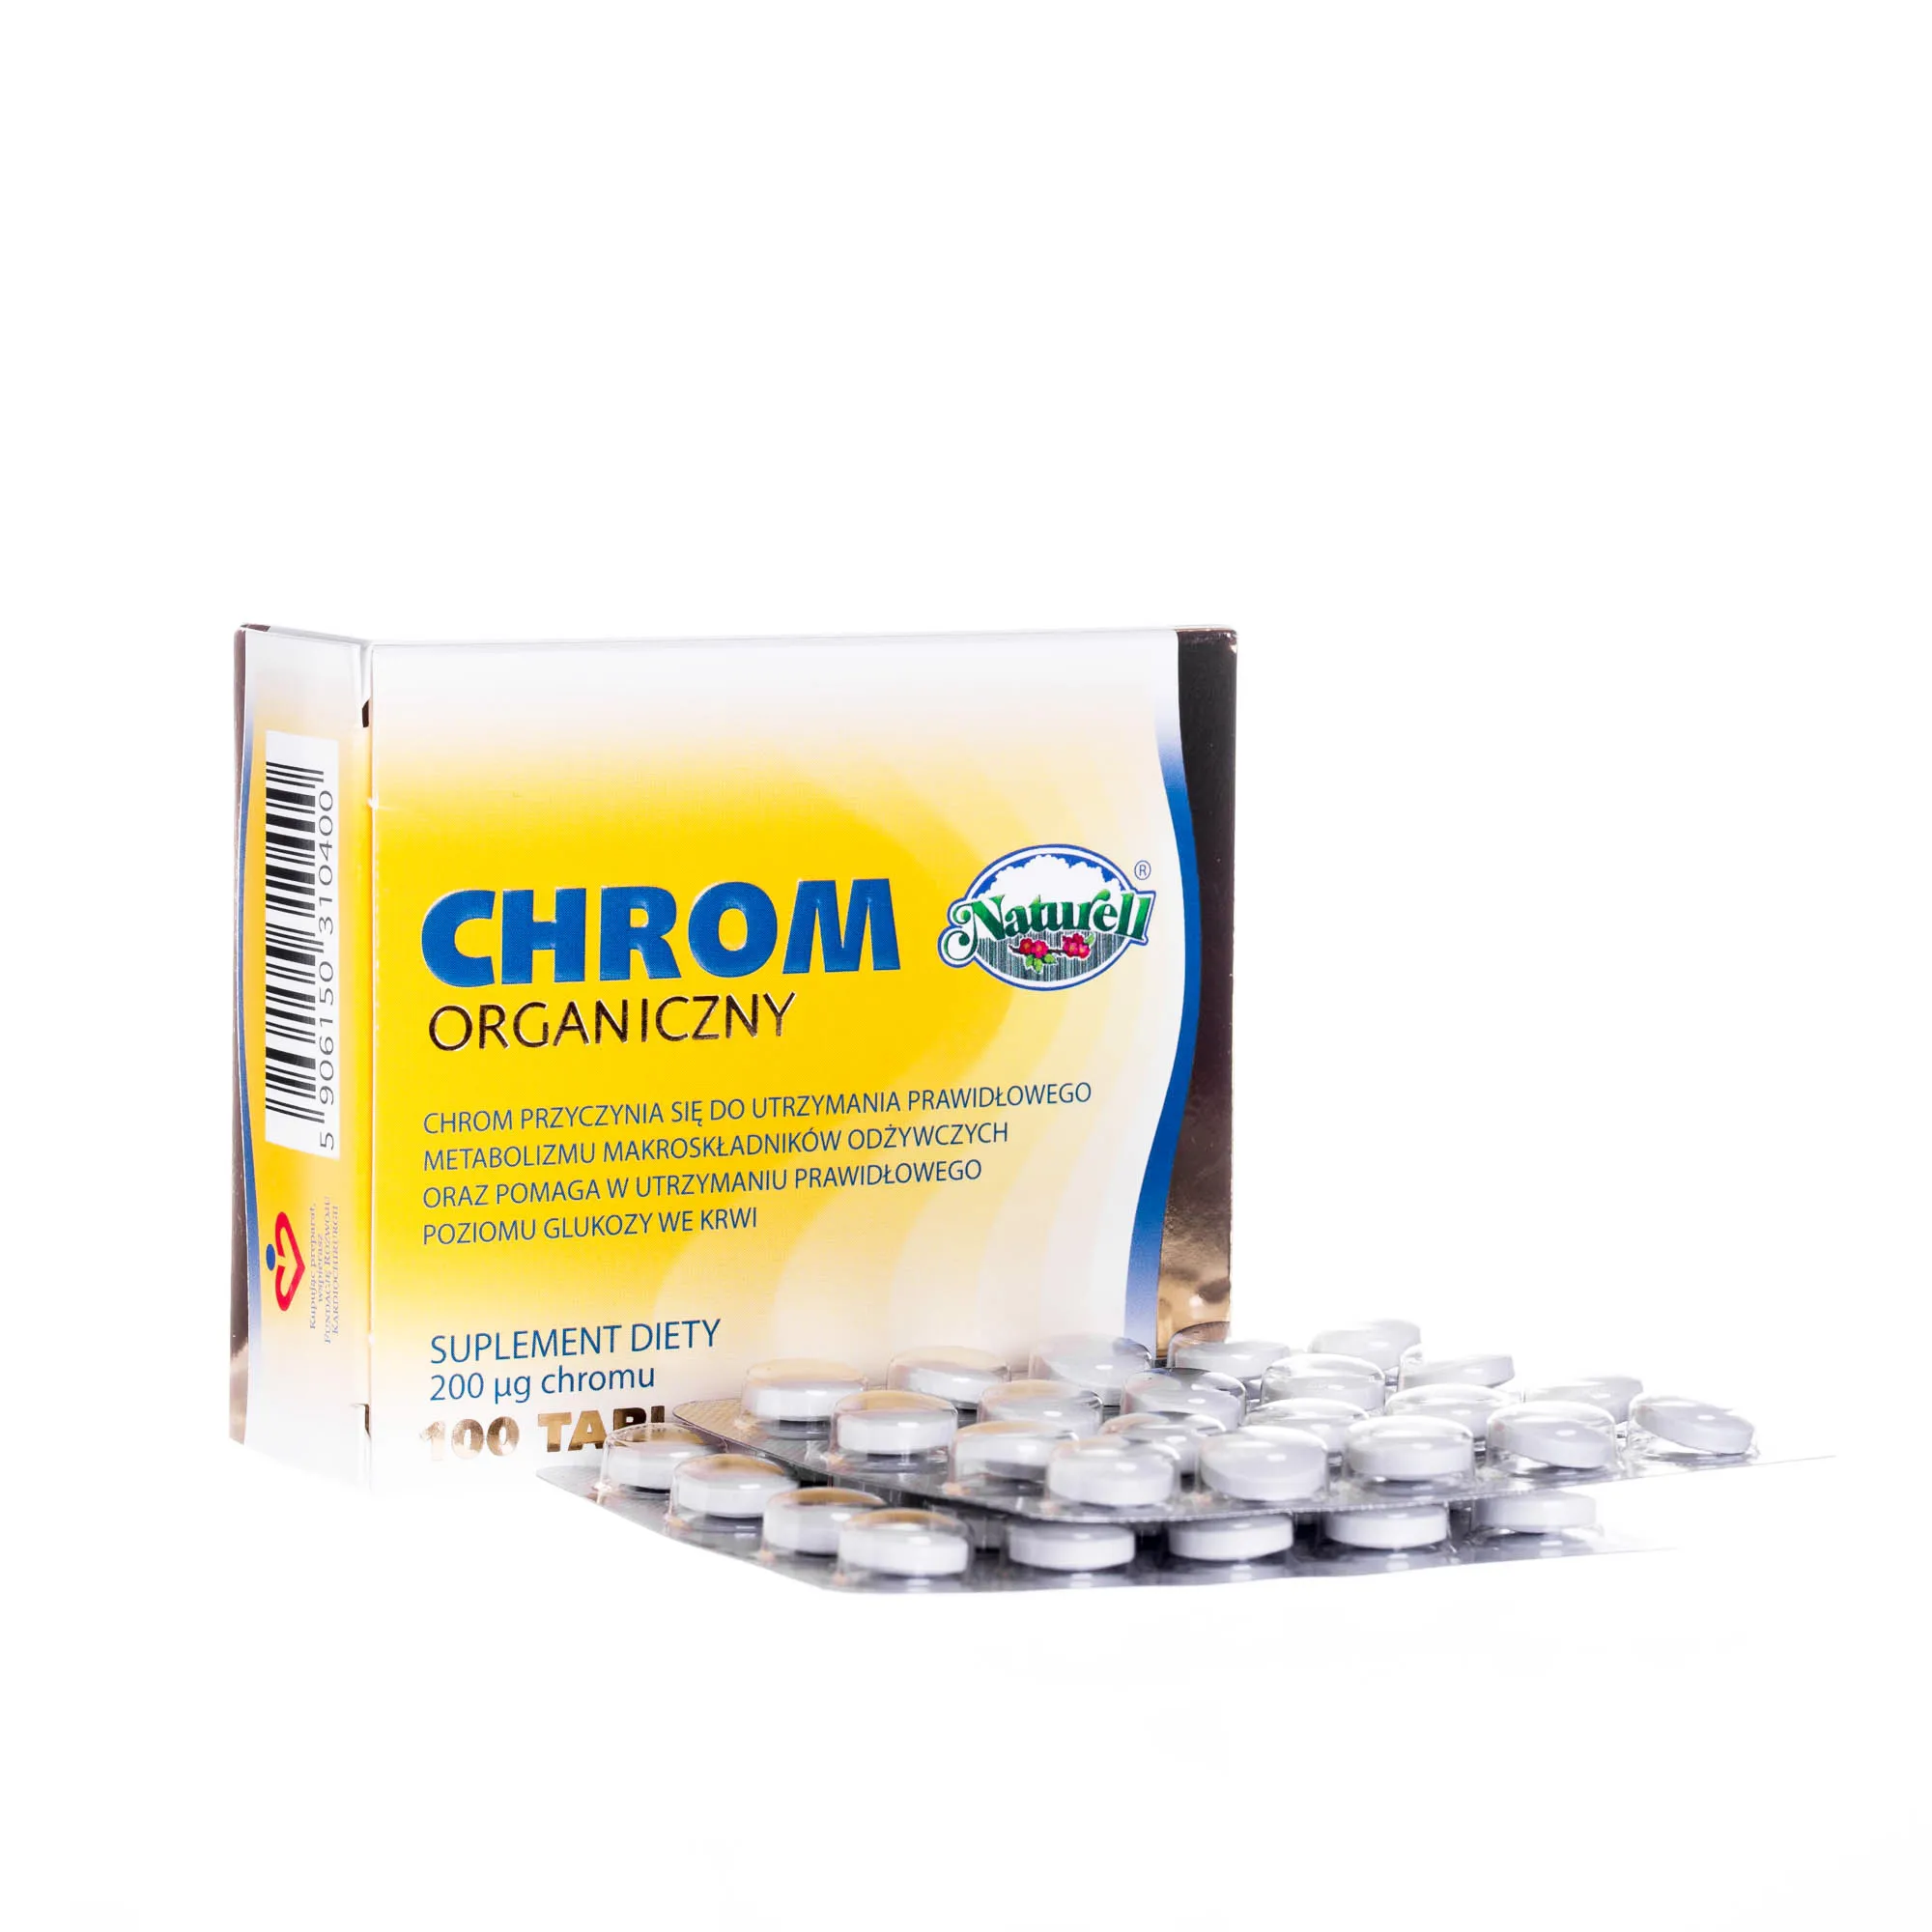 Chrom organiczny, suplement diety 200 μg Chromu, 100 tabletek